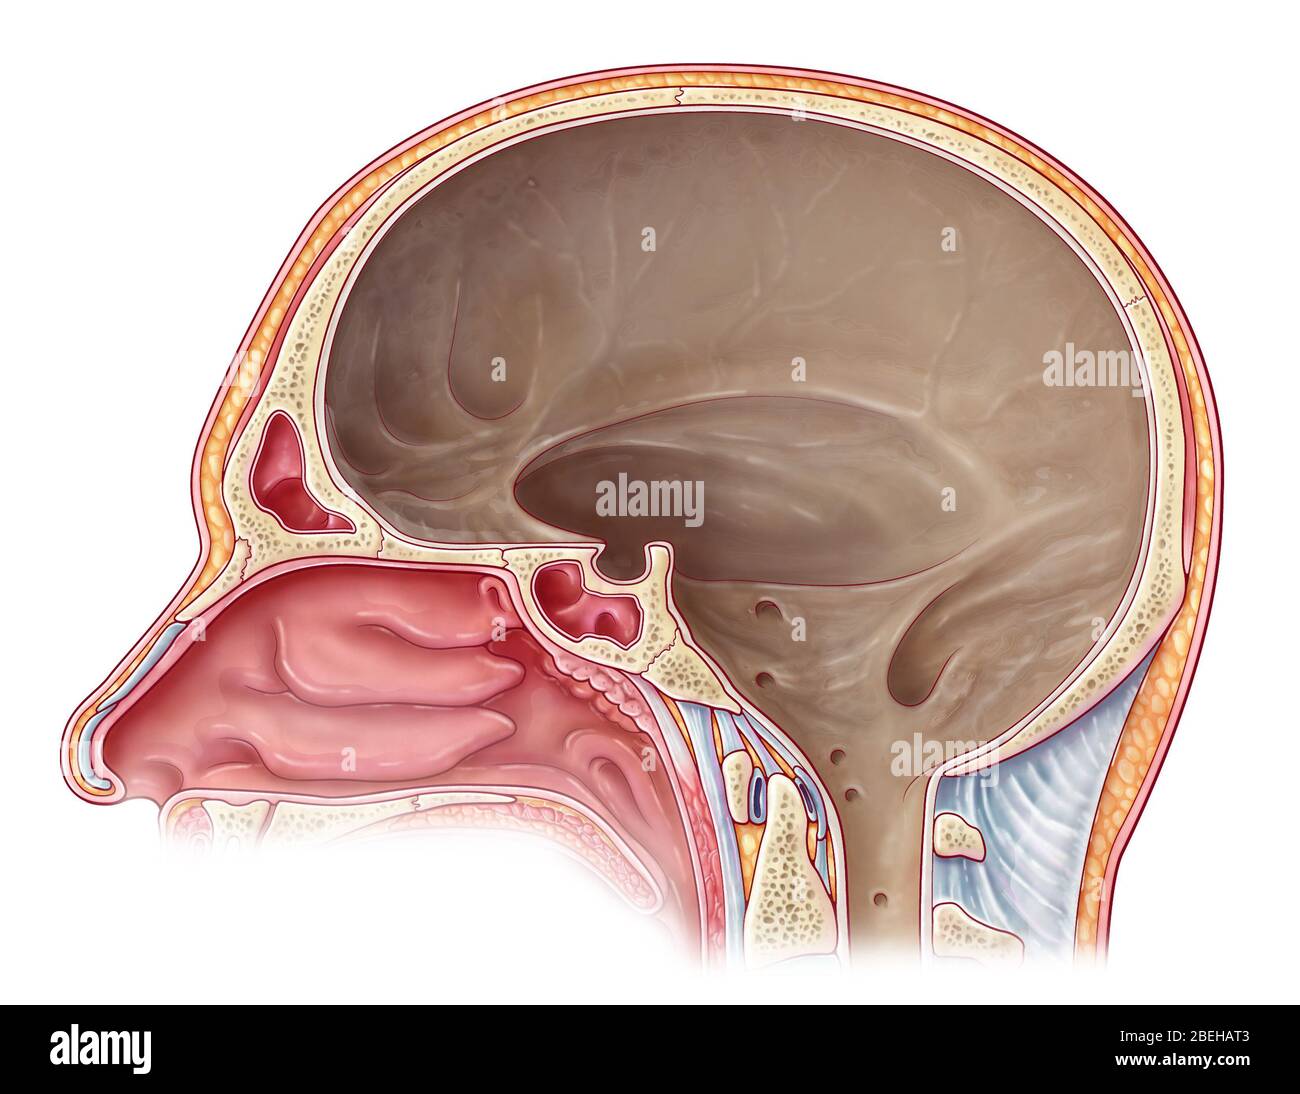 Illustration de la cavité crânienne à partir d'une vue sagittale médiane. L'espace est doublé d'une membrane dure appelée le mater de la dura, qui est la couche la plus externe des méninges qui entourent le cerveau et la moelle épinière. Banque D'Images